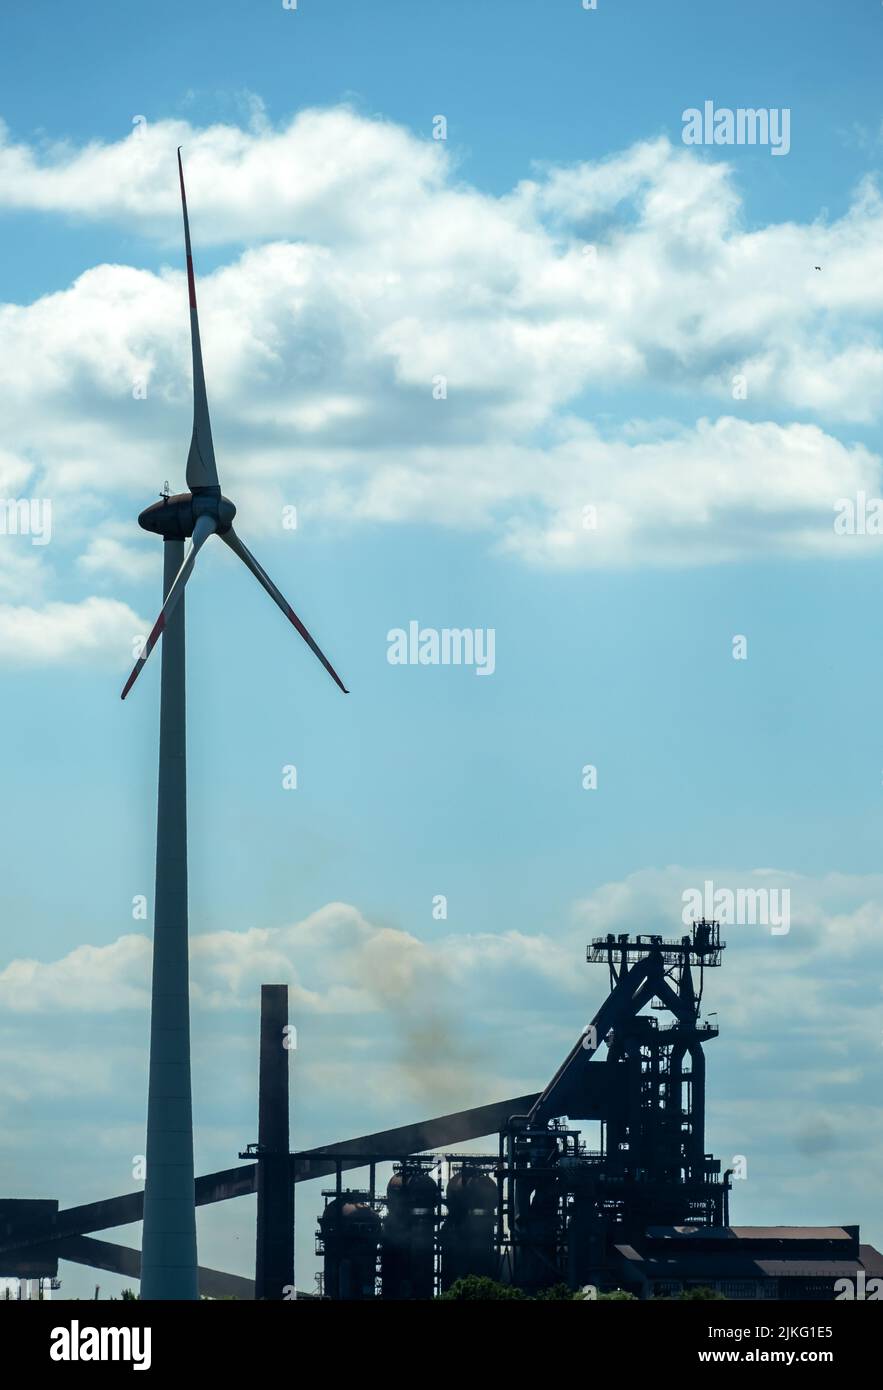 16.06.2022, Germania, Brema, Brema - l'impianto siderurgico di ArcelorMittal Bremen GmbH e la turbina eolica, l'acciaio verde (elettrolisi, idrogeno) di Brema è p Foto Stock